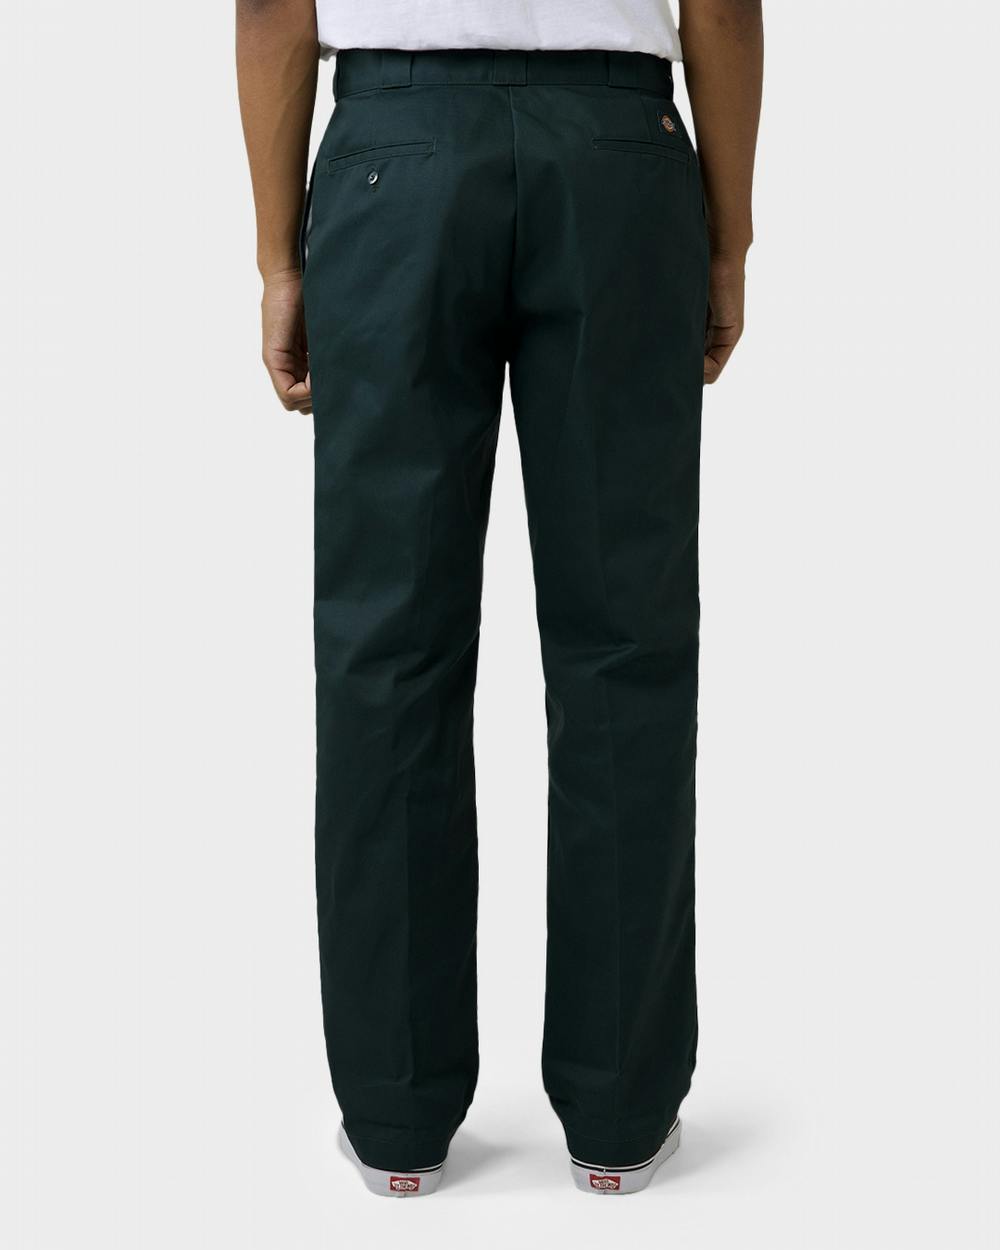 Dickies 874 Original Fit Pants - Hunter Green - ShopperBoard